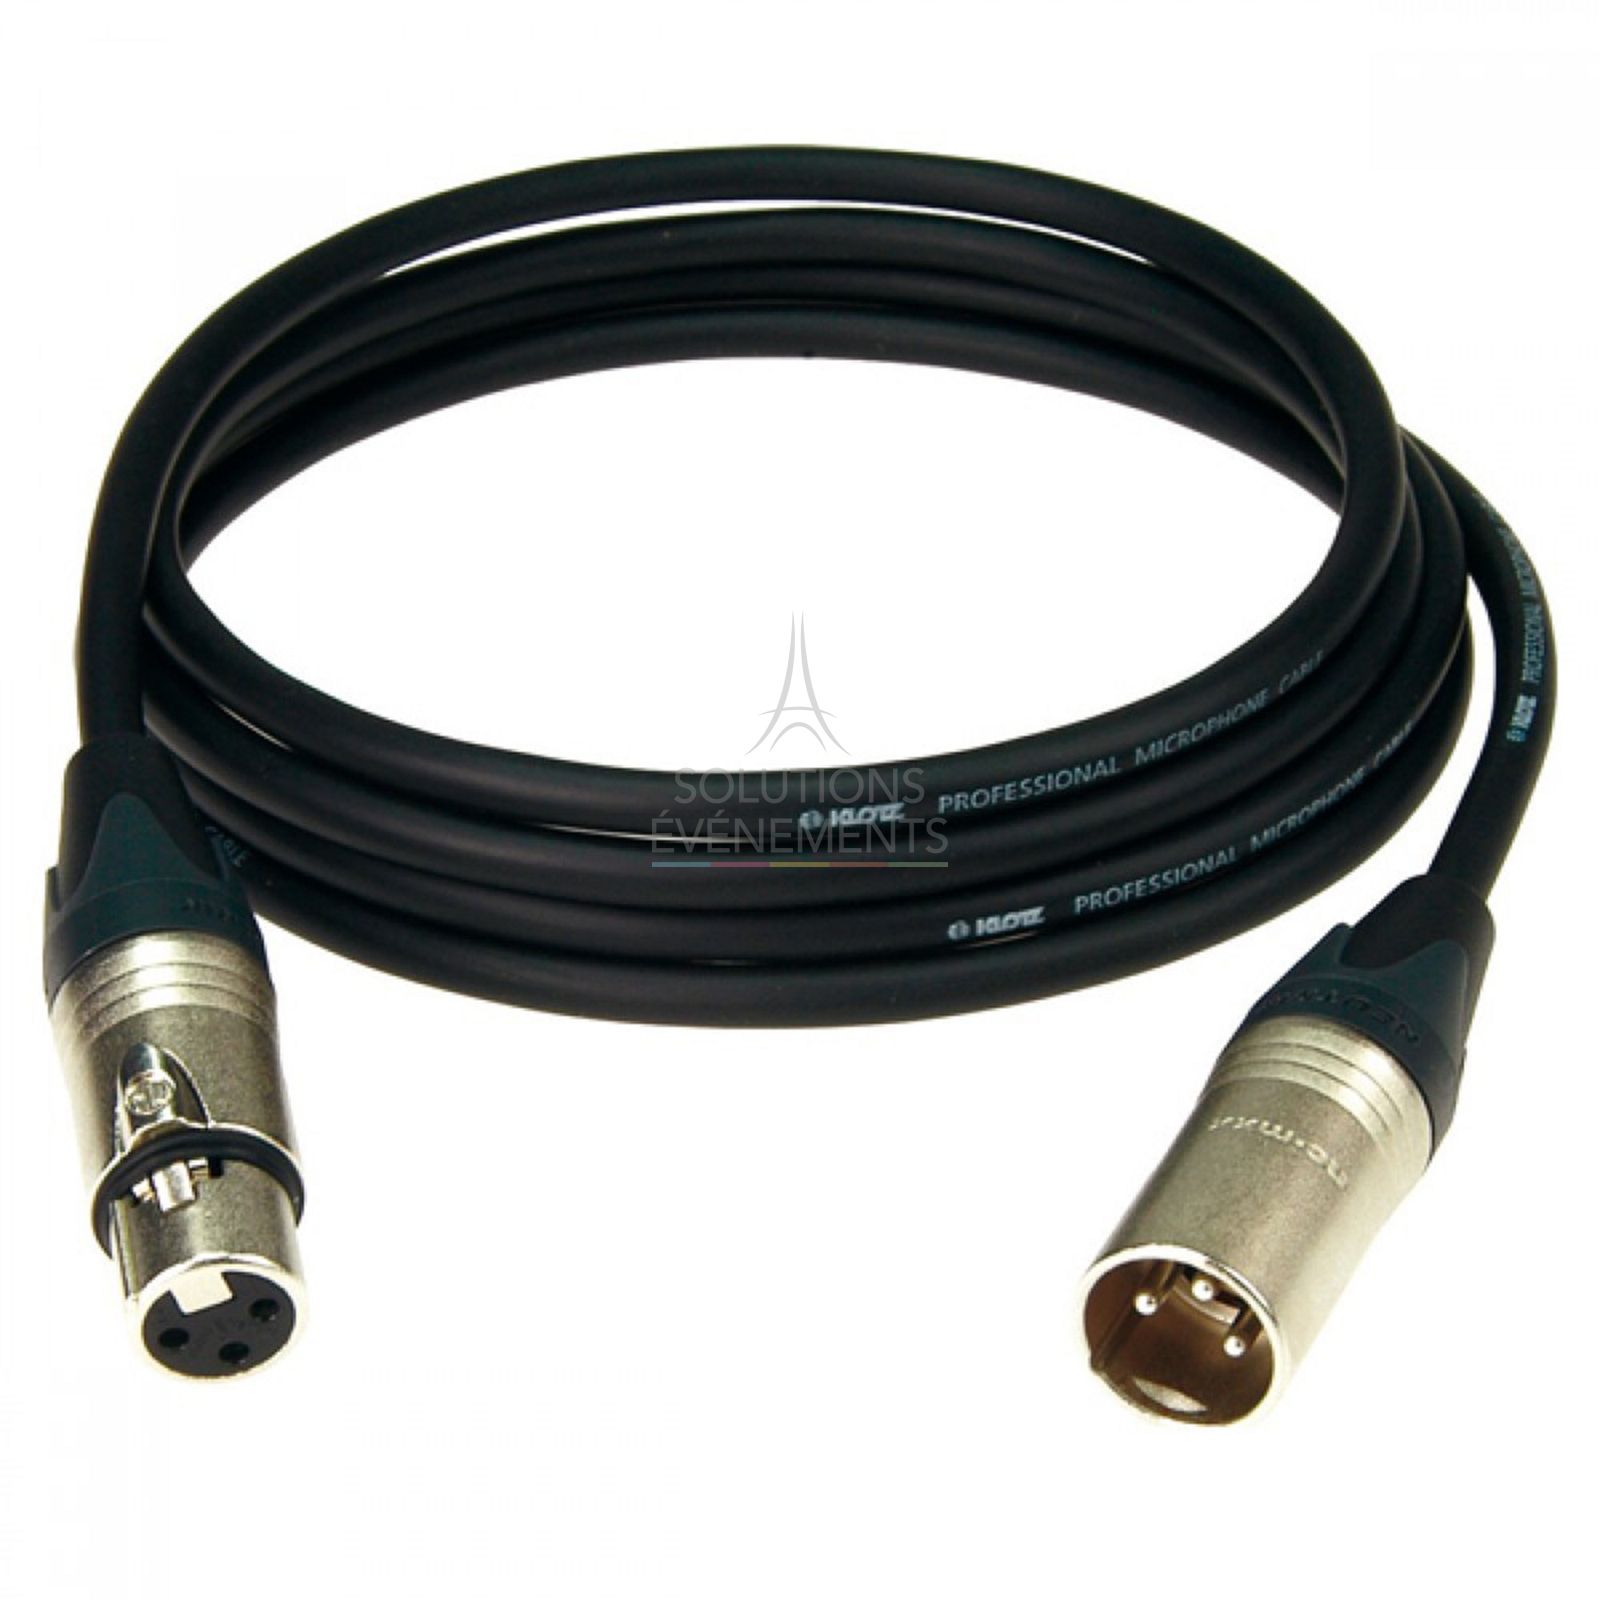 Xlr/xlr audio cable rental